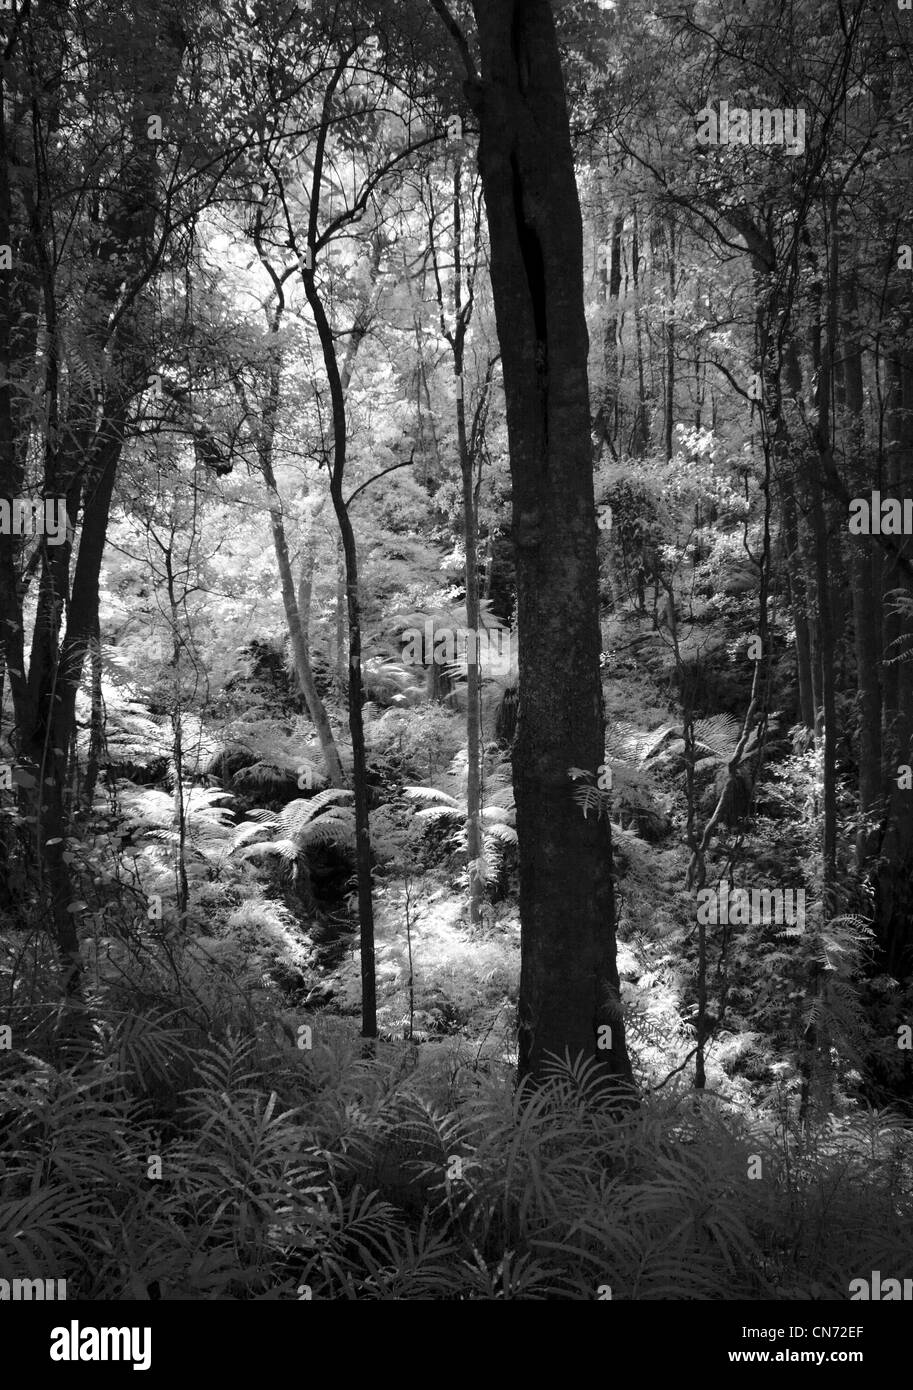 La forêt enchantée. Les fougères arborescentes poussant dans une vallée au sud-est du Parc National des Forêts. Nsw Australie Banque D'Images